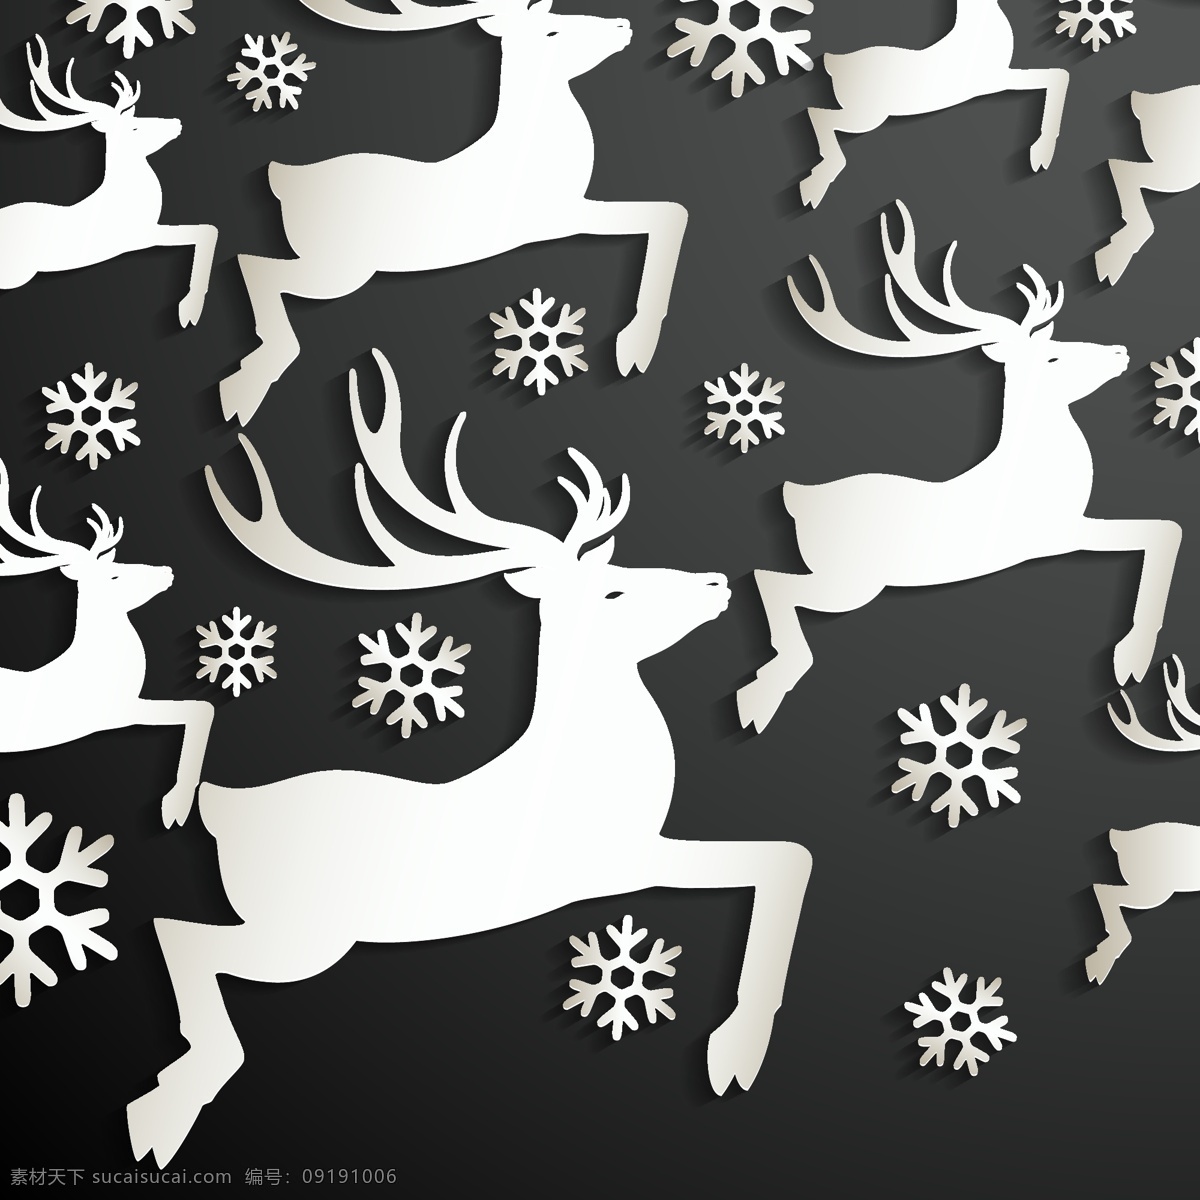 黑色 背景 上 驯鹿 雪花 圣诞节 庆祝 快乐 节日 鹿 装饰 十二月 文化 欢乐 季节 问候 赠送 传统 夏娃